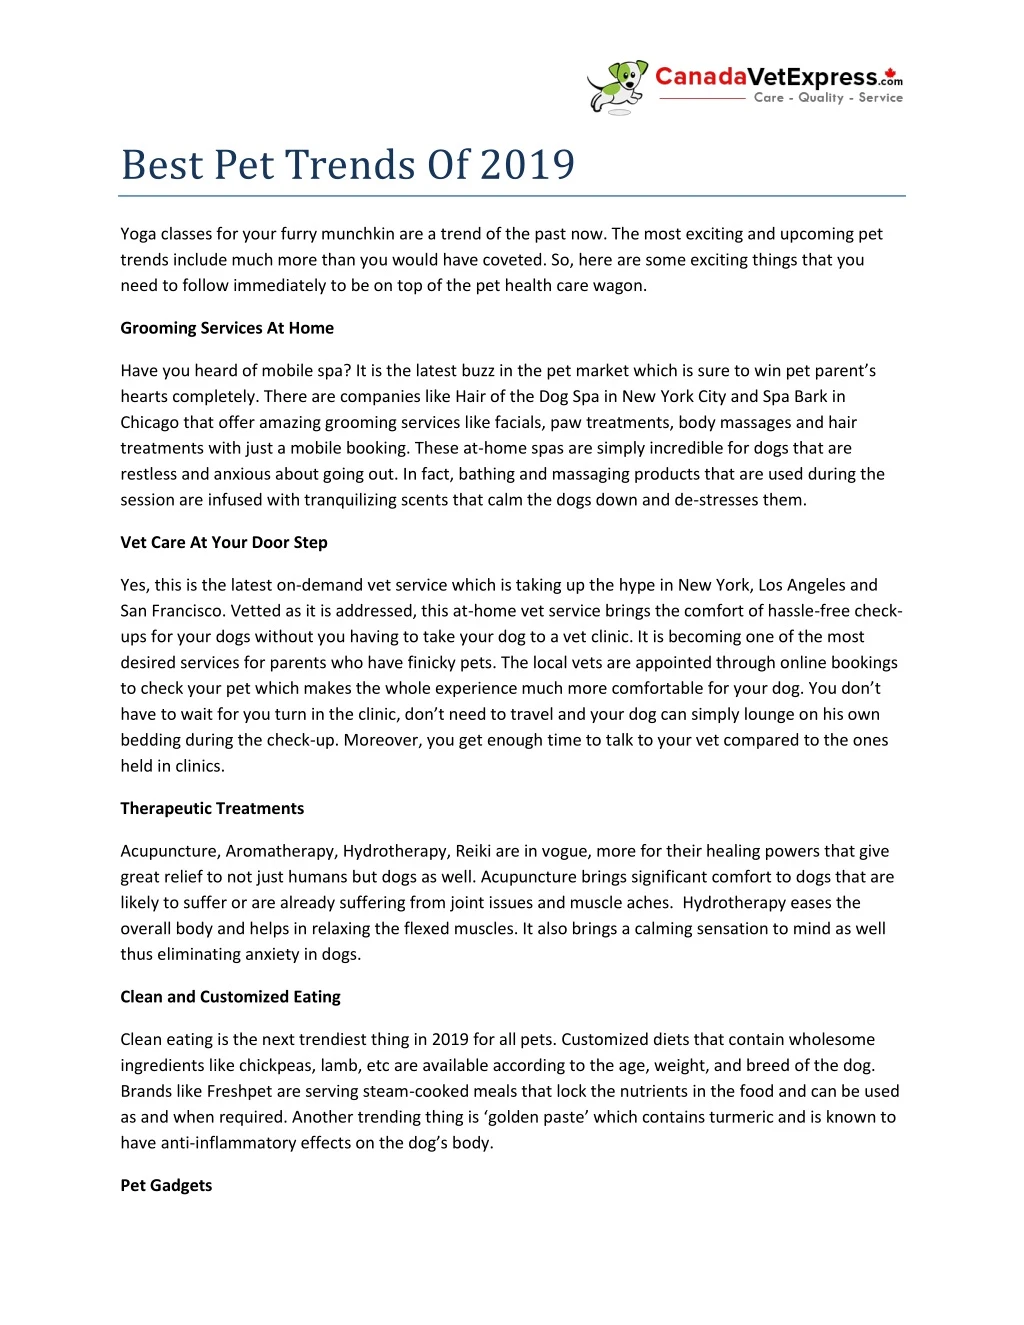 best pet trends of 2019